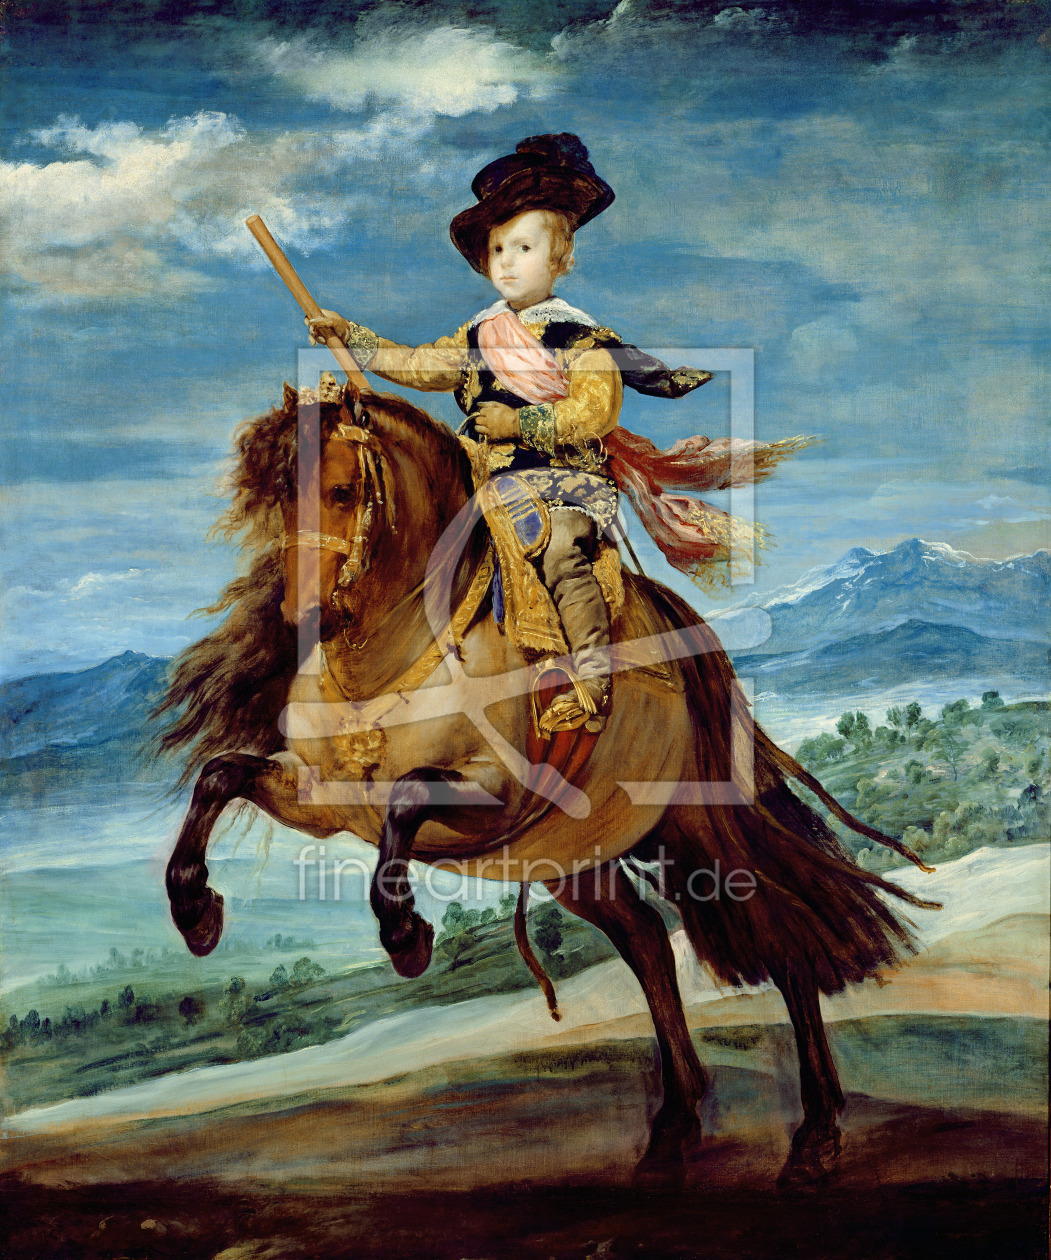 Bild-Nr.: 31002076 Prince Balthasar Carlos on horseback, c.1635-36 erstellt von Velazquez, Diego Rodriguez de Silva y